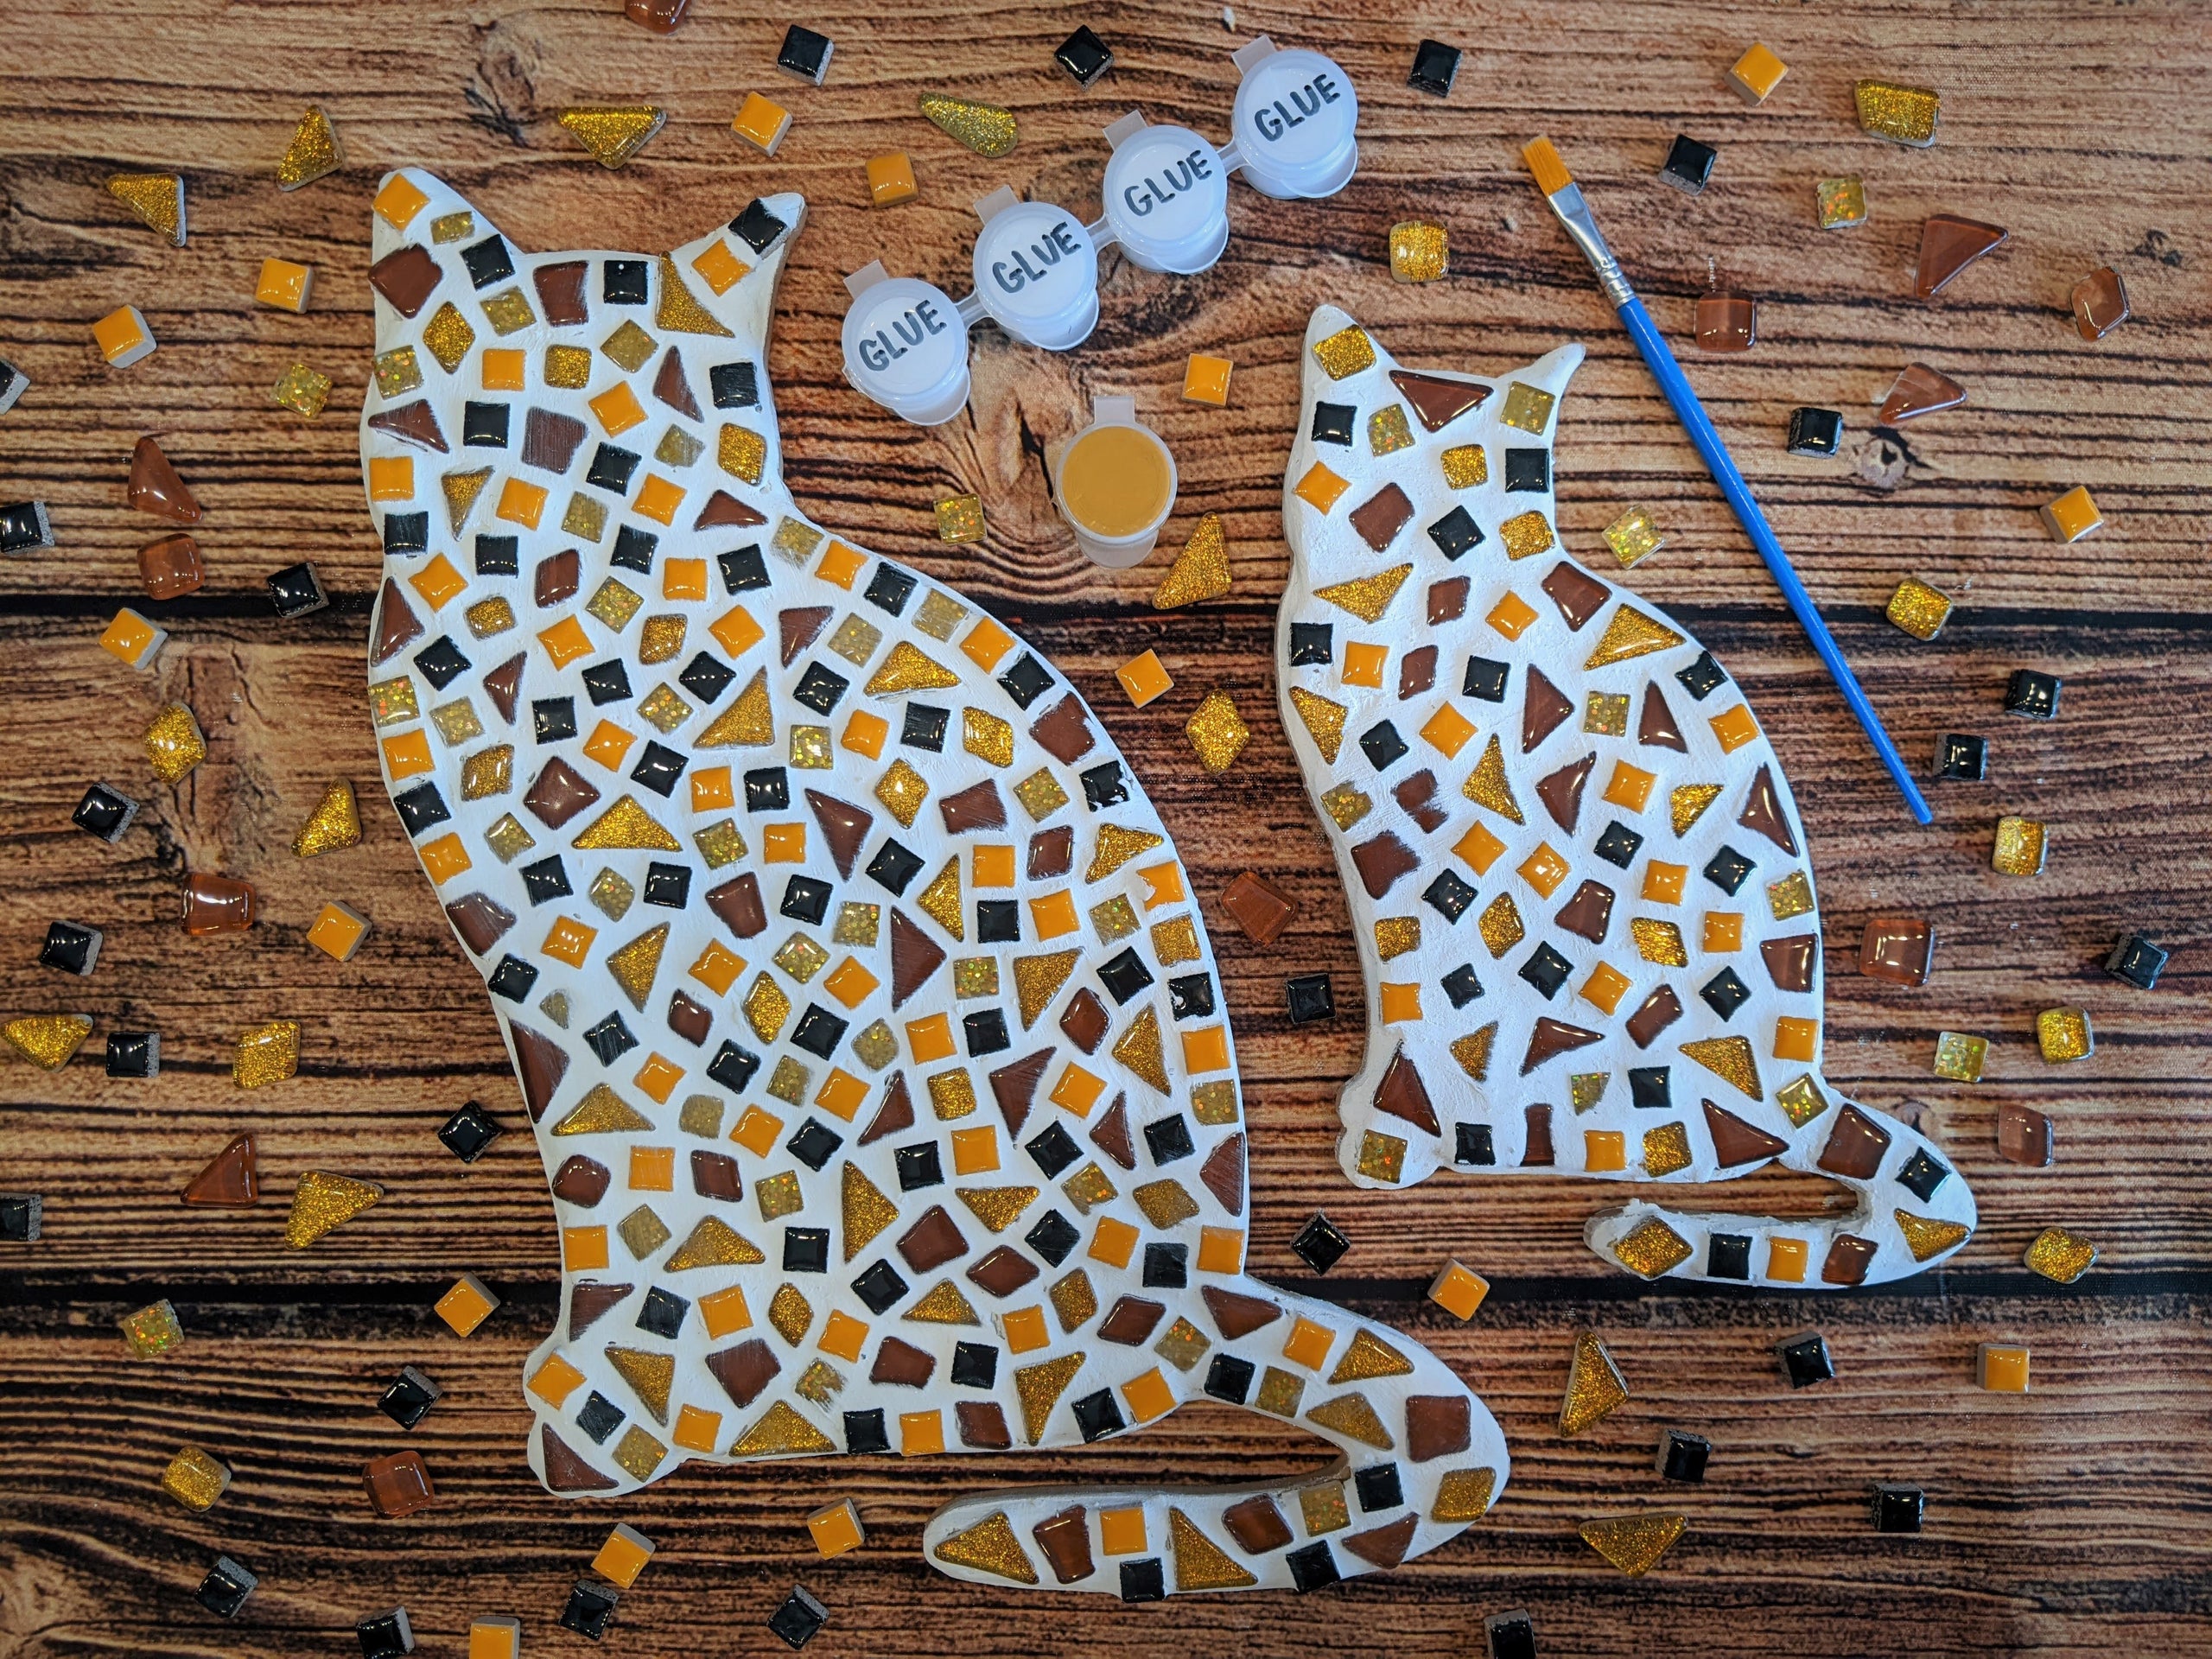 Mosaic Cat Diamond Painting Kit - DIY – Diamond Painting Kits